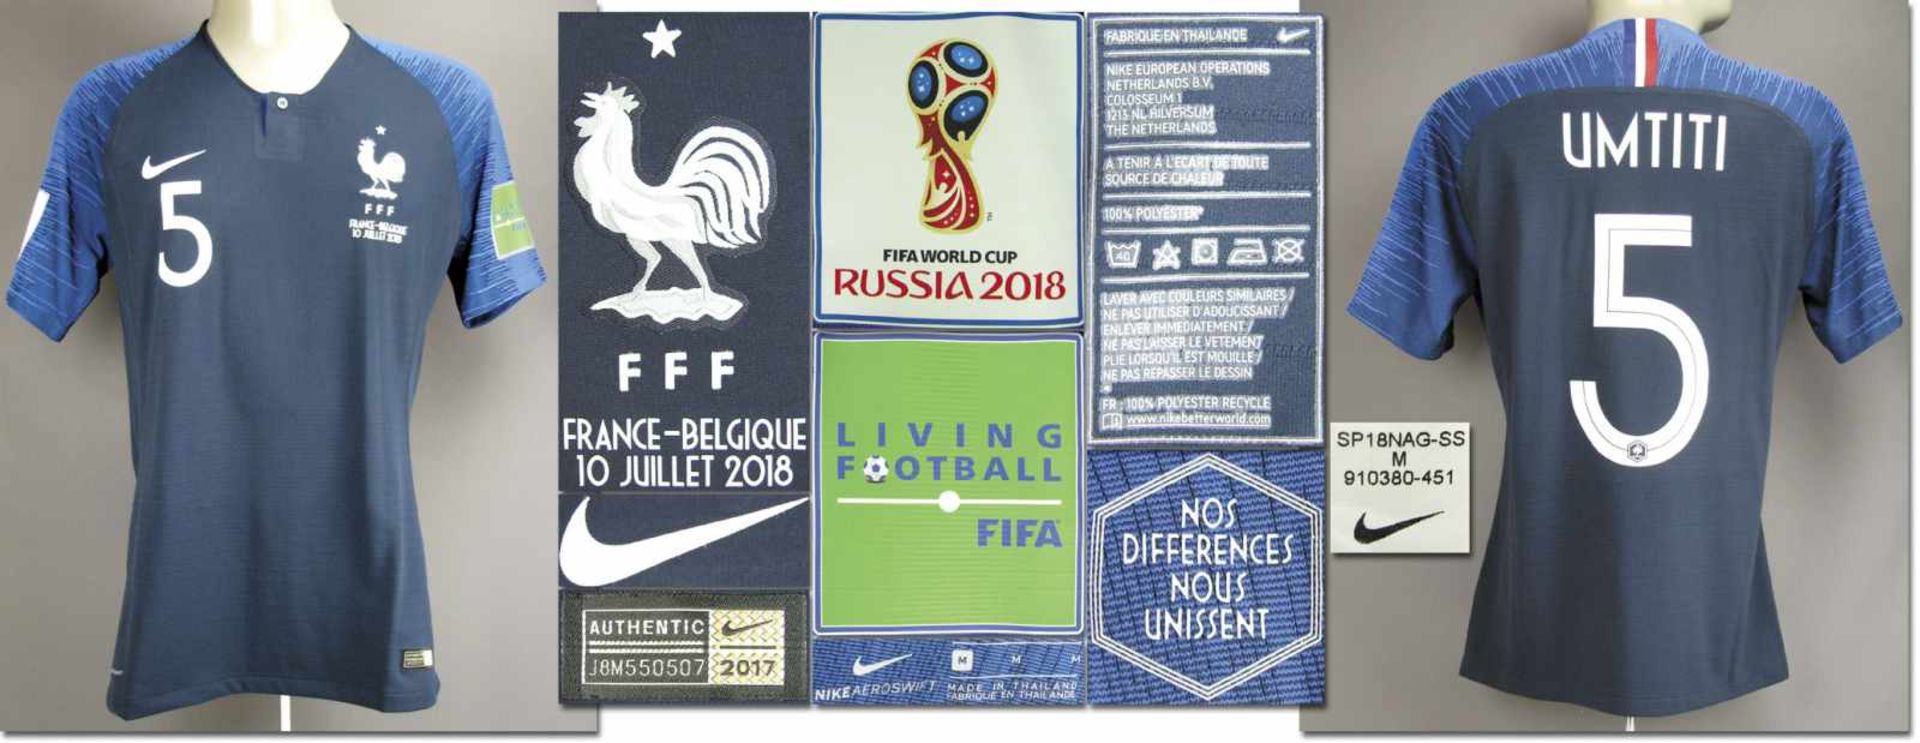 World Cup 2018 match worn football shirt France - Original match worn shirt France with number 5.